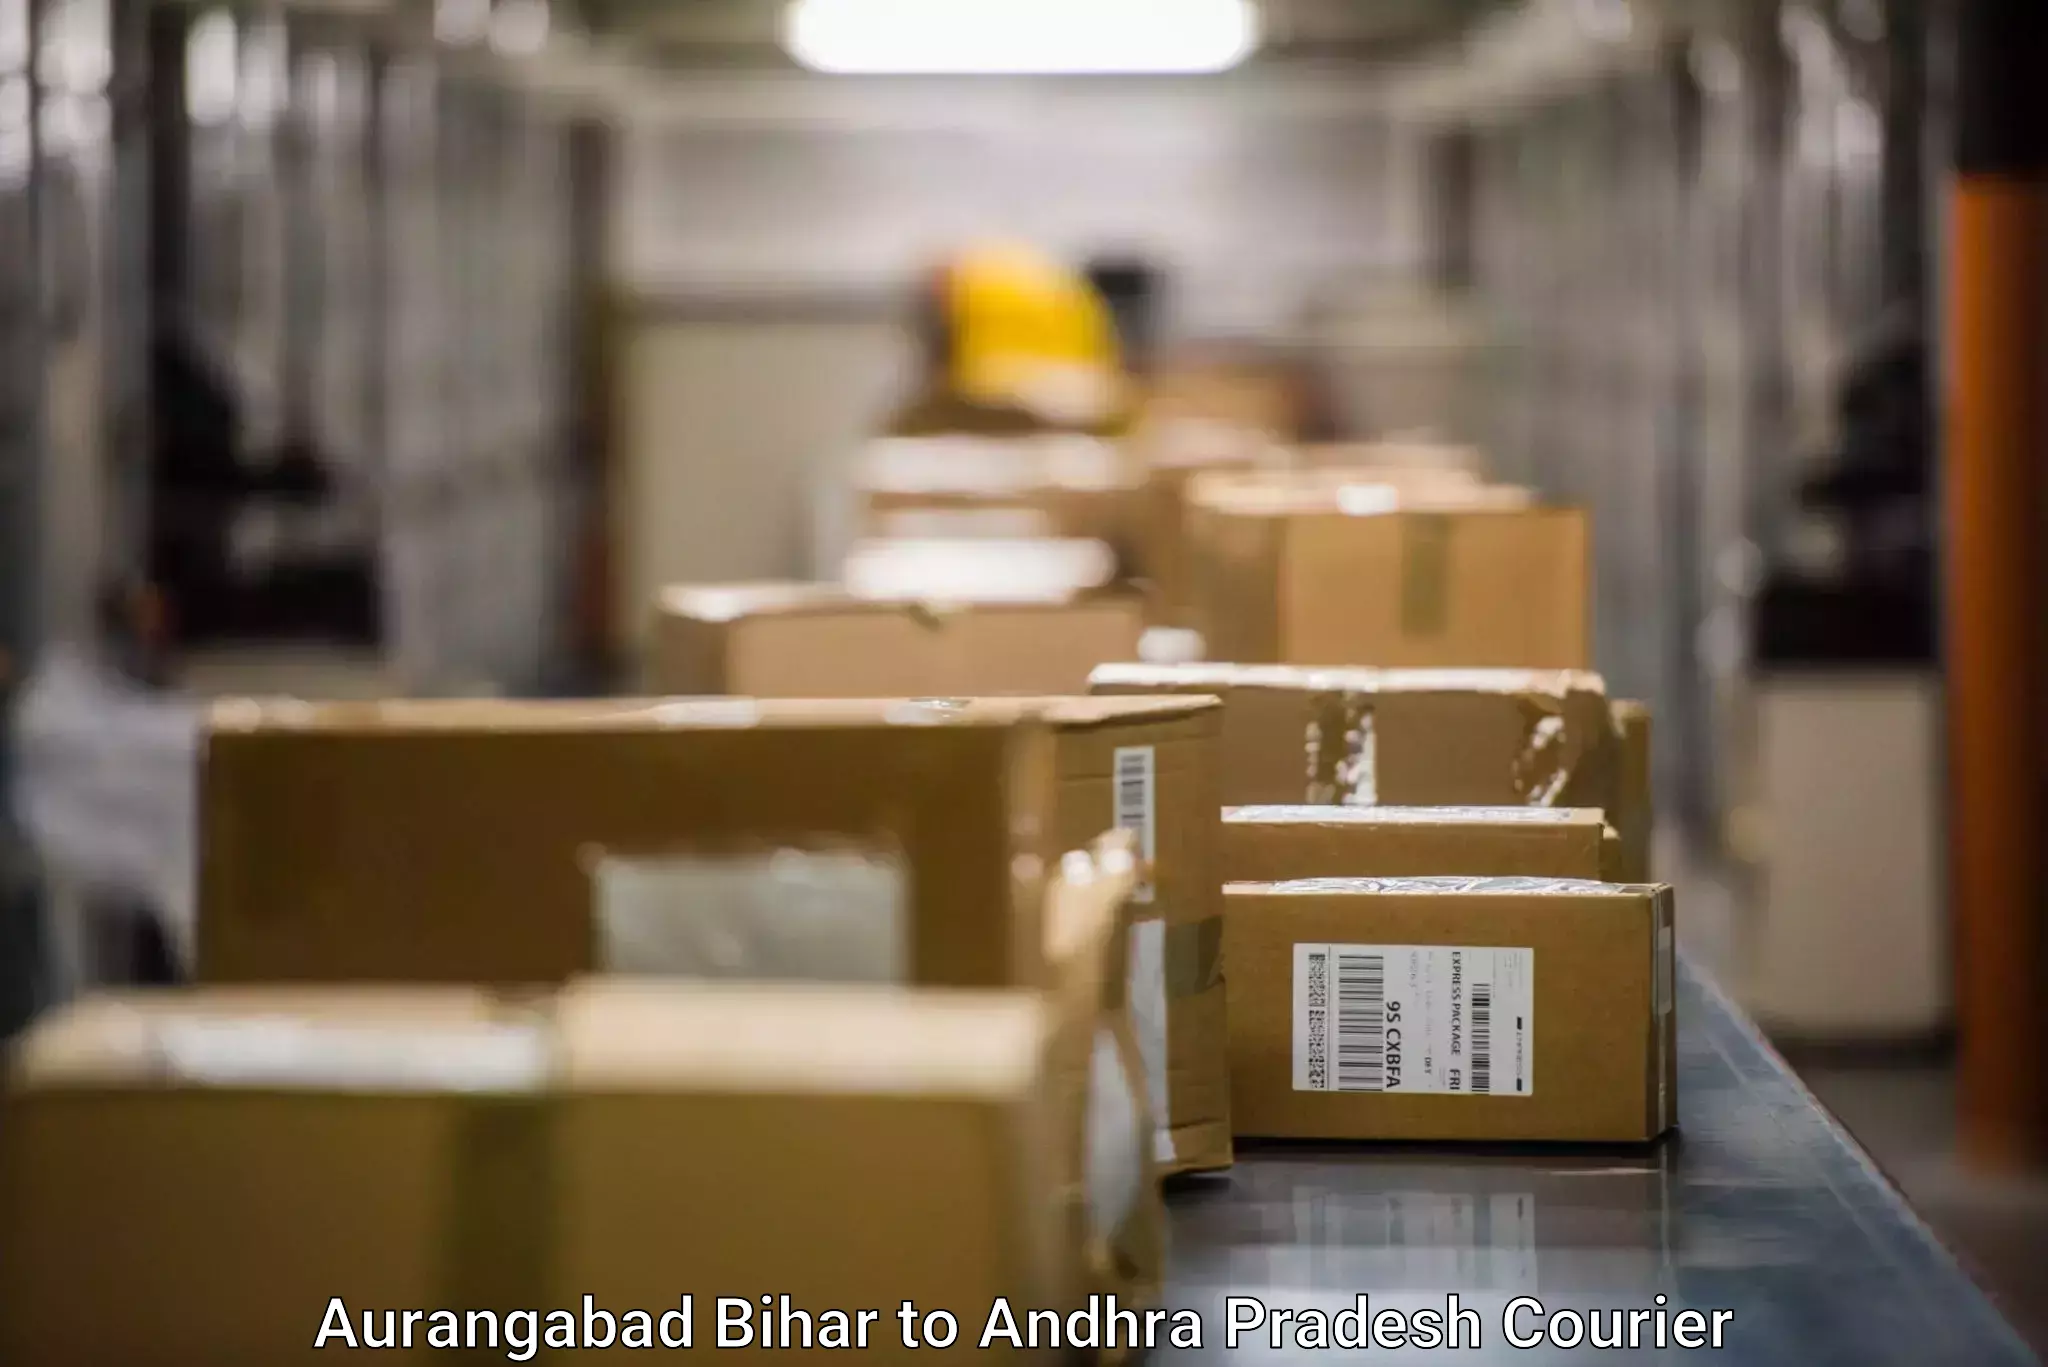 Global parcel delivery Aurangabad Bihar to Tirupati